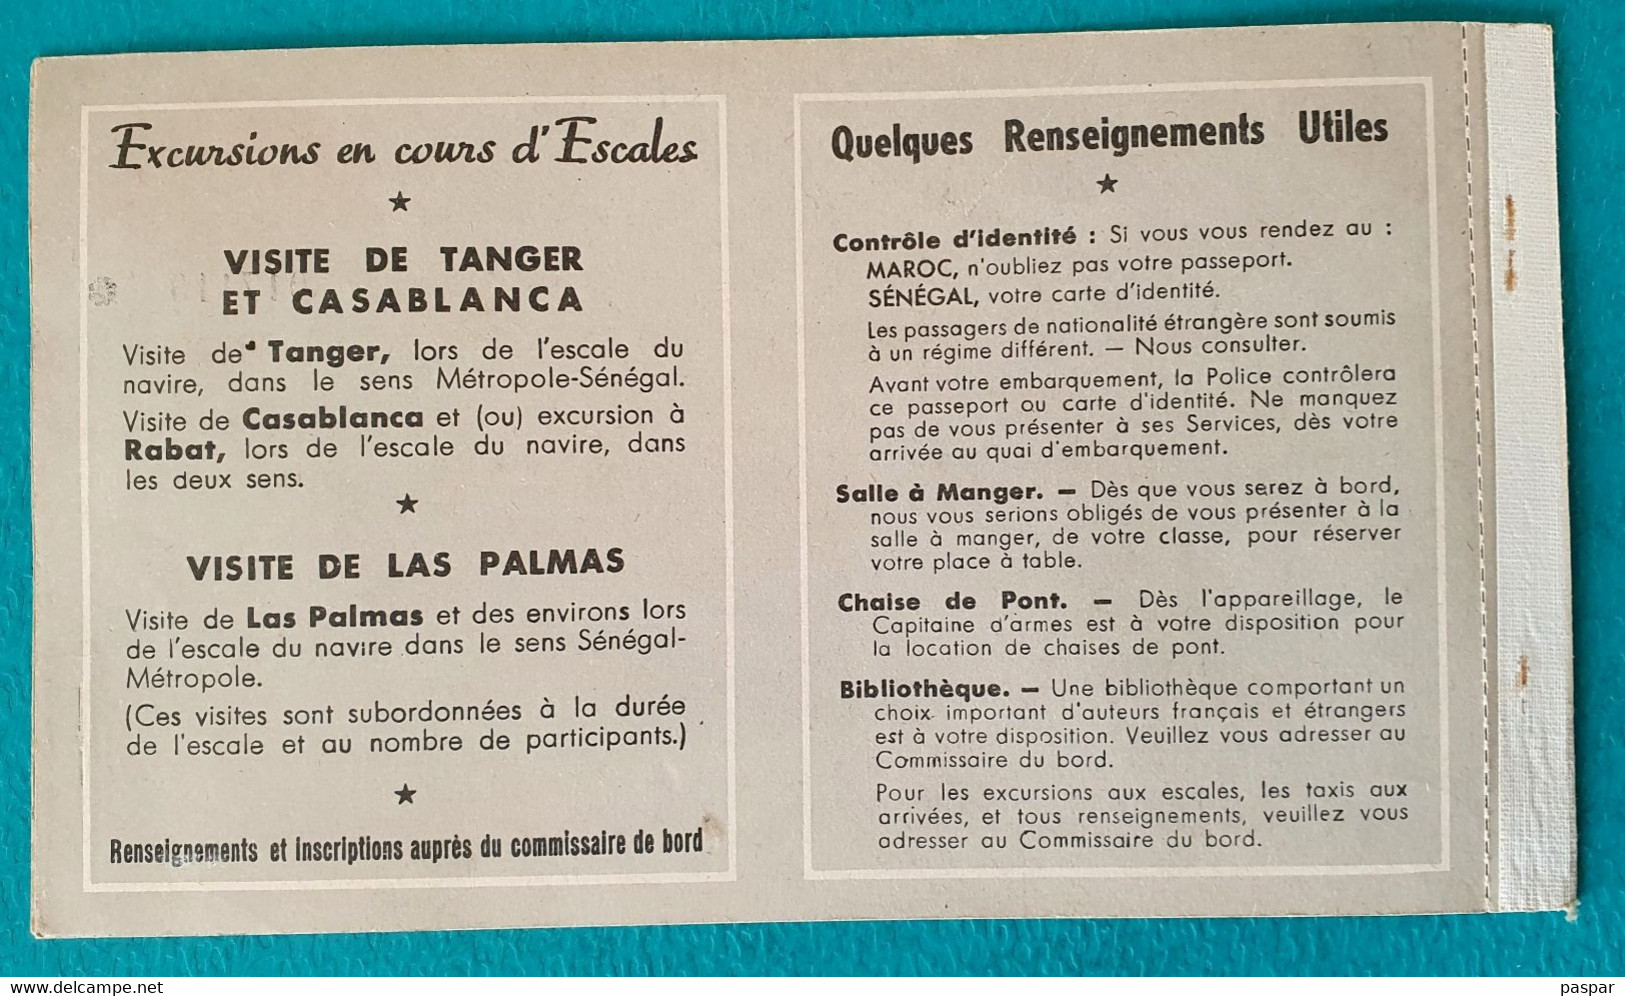 COMPAGNIE DE NAVIGATION PAQUET - BILLET DE PASSAGE ALLER SIMPLE DAKAR MARSEILLE 1ere CLASSE SENEGAL - 1956 - Mondo